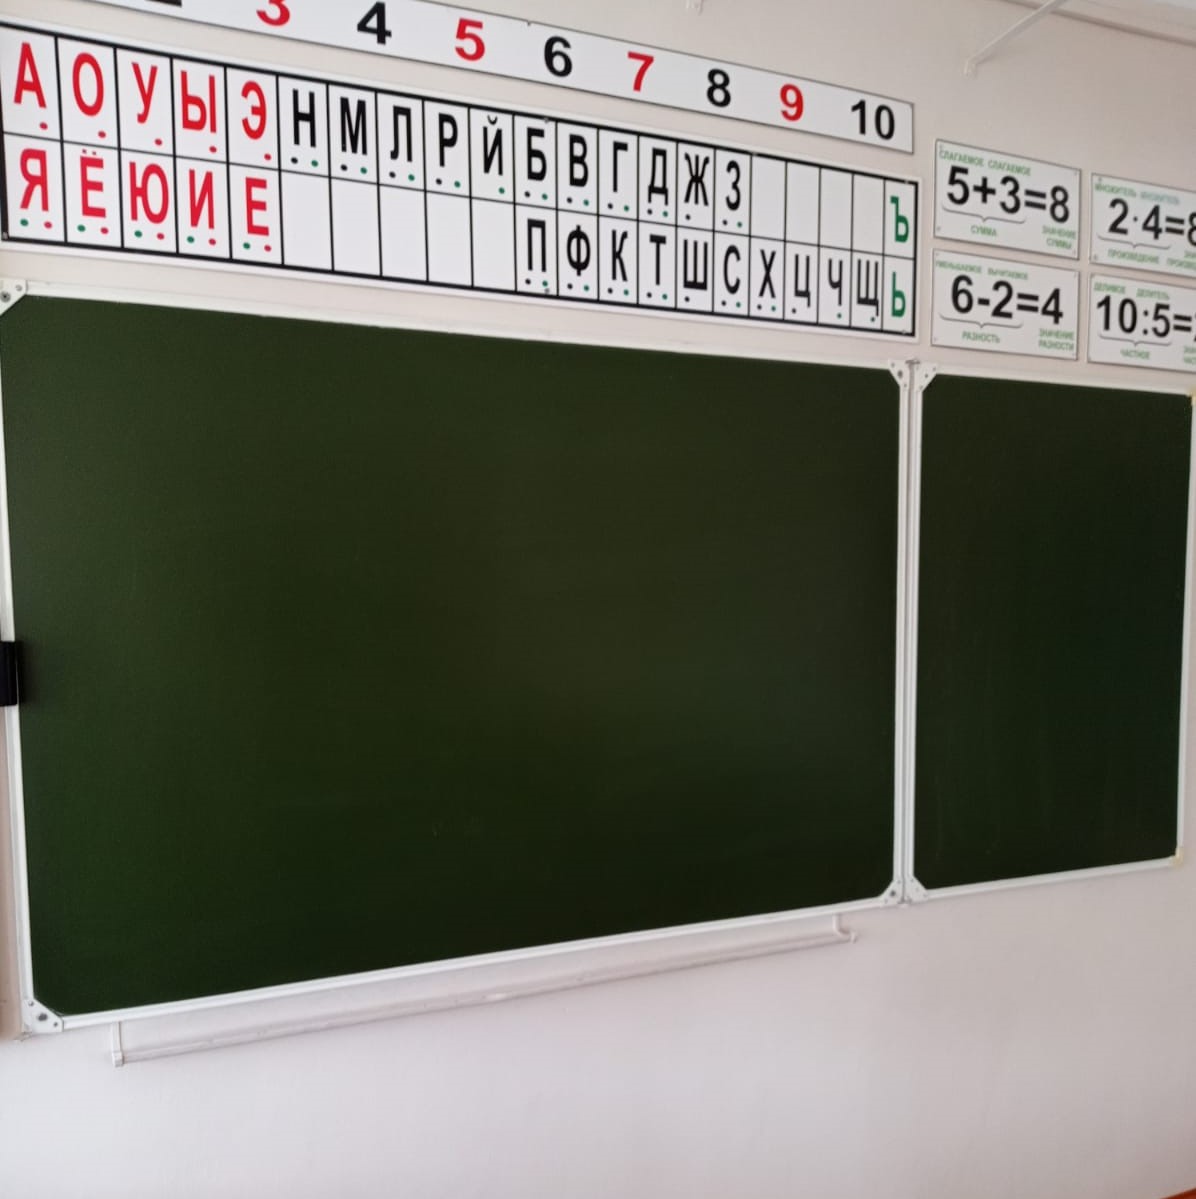 Оценки за поведение могут ввести в российских школах